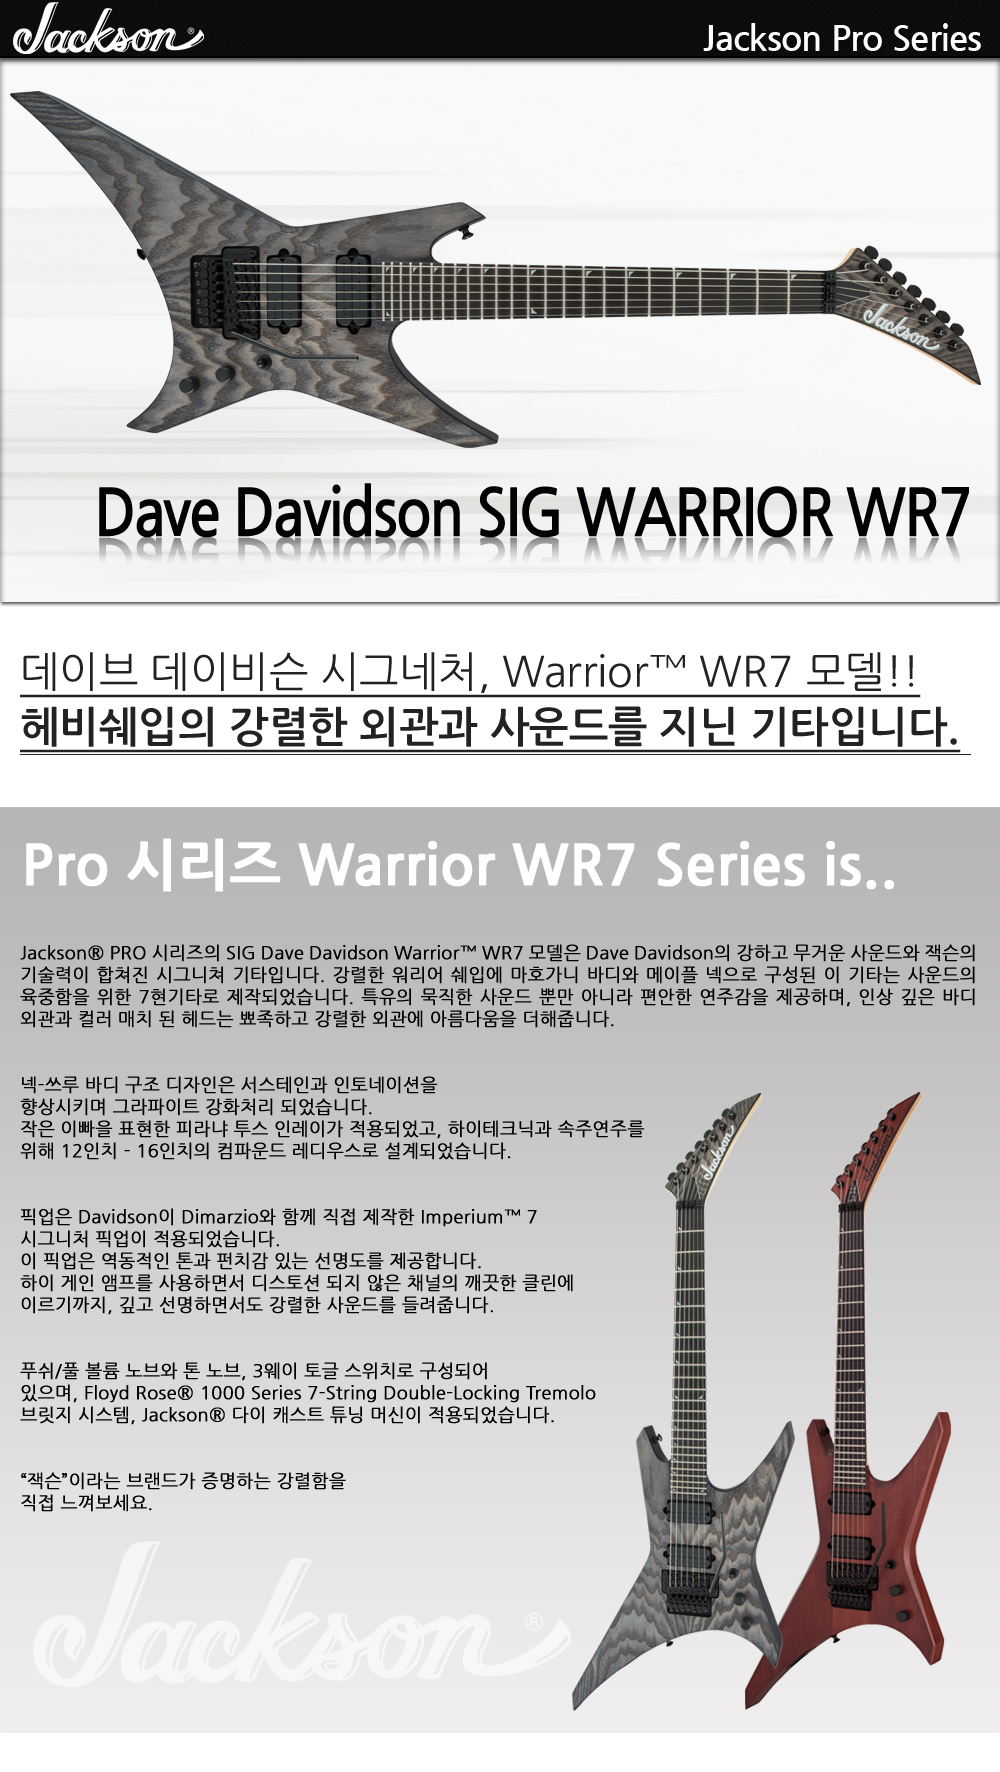 Jackson-Pro-SIG-DD-Warrior-WR7-DistressedAsh_1_115316.jpg